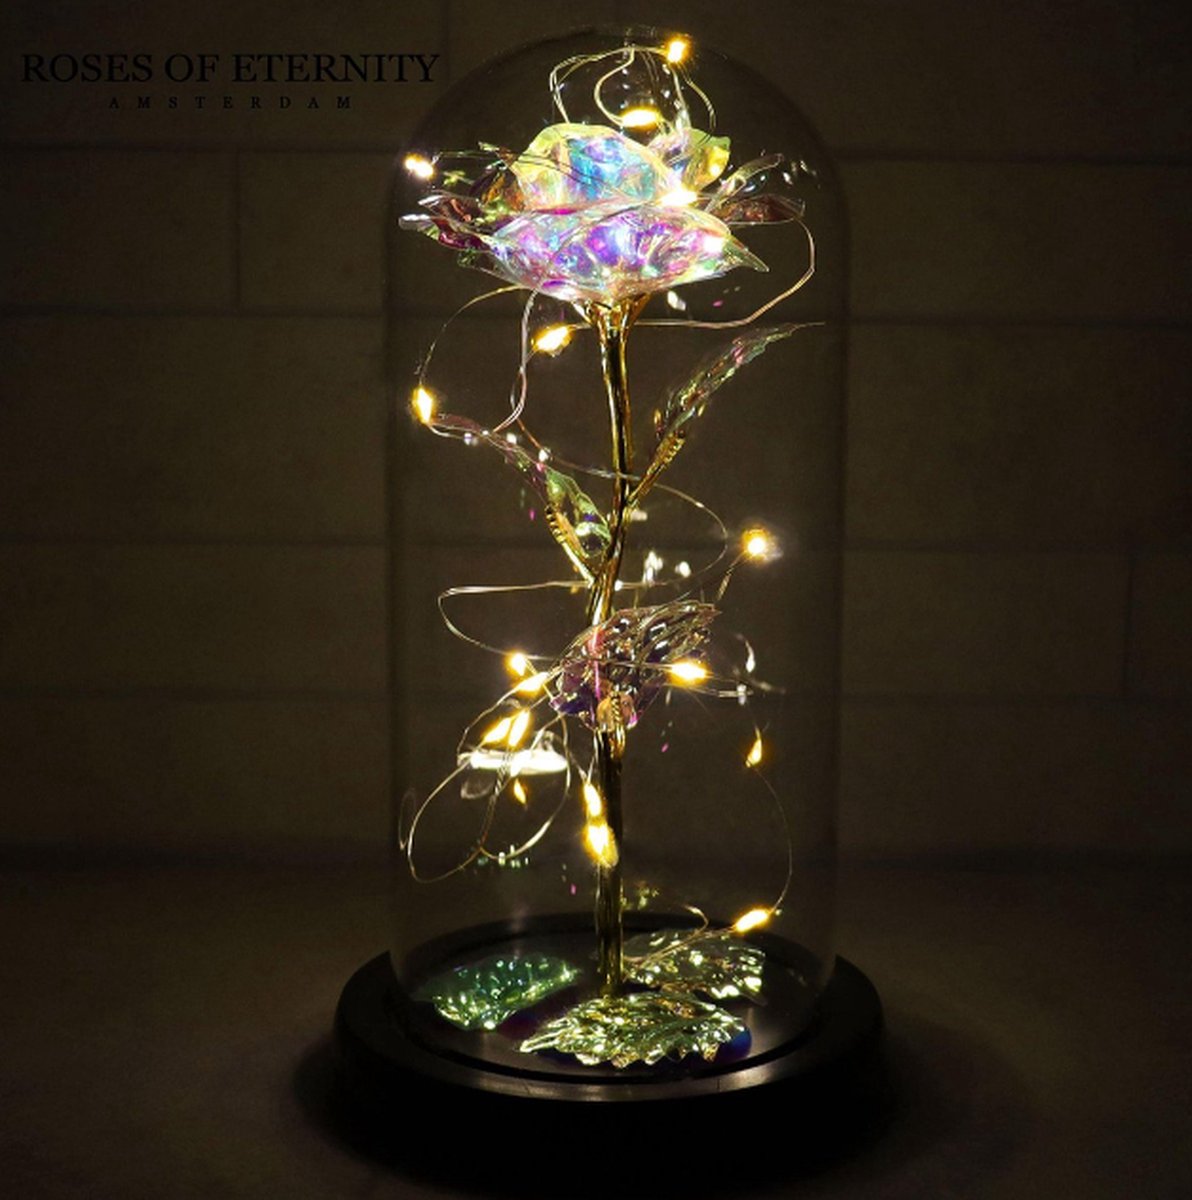 Roses of Eternity - Galaxy roos in glazen stolp met LED - Cadeau voor vrouw, vriendin, haar - Huwelijk - Romantisch Liefdes Moederdag cadeautje - Roses of Eternity